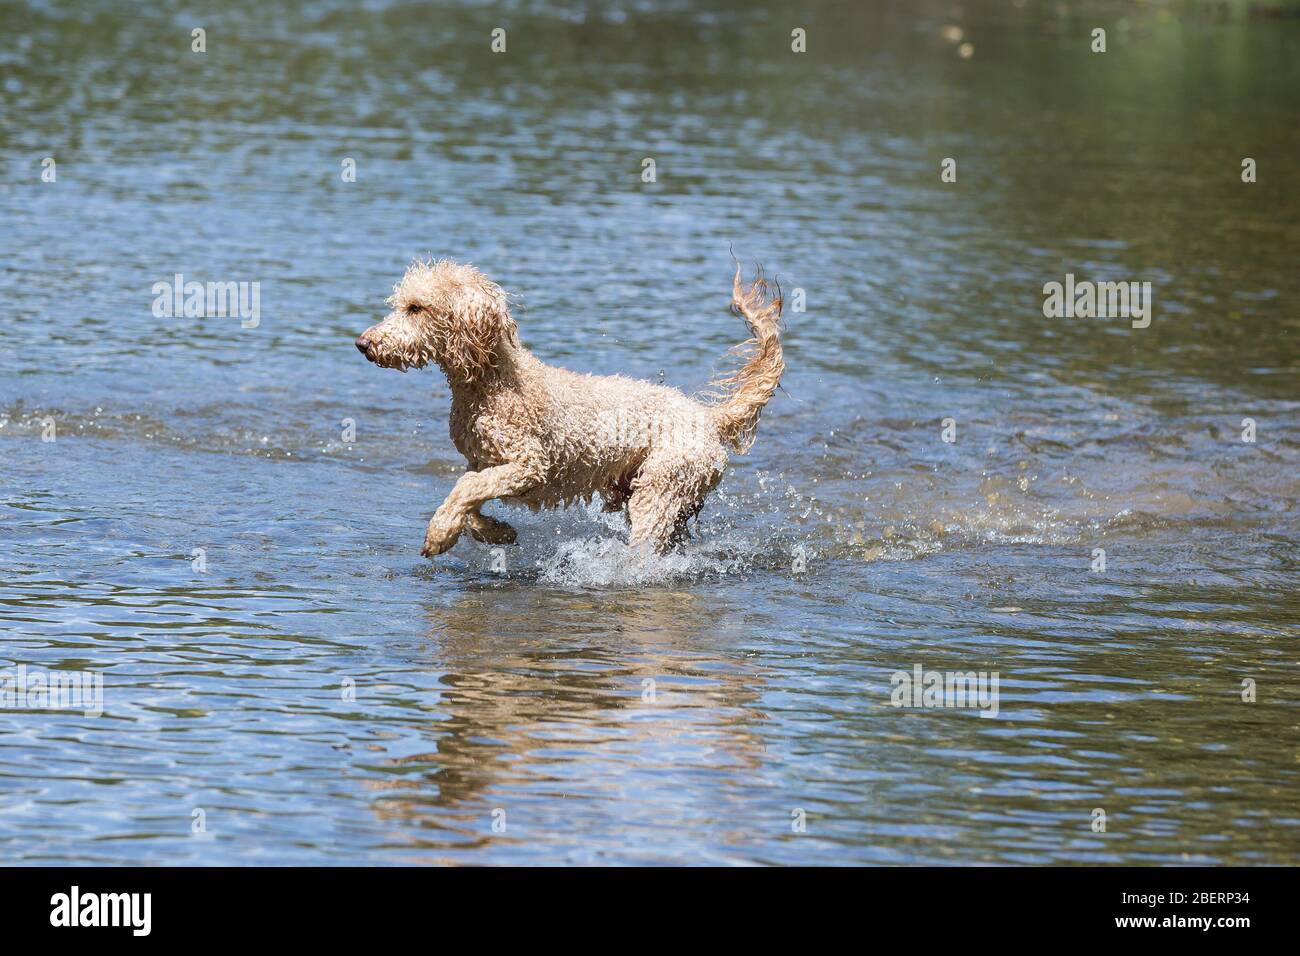 Porträt eines jungen Pudelhundes im Leitha-Fluss. Ein glücklicher Hund springt an einem sonnigen Tag in das kalte Wasser eines wilden Flusses, Leitha, Österreich Stockfoto